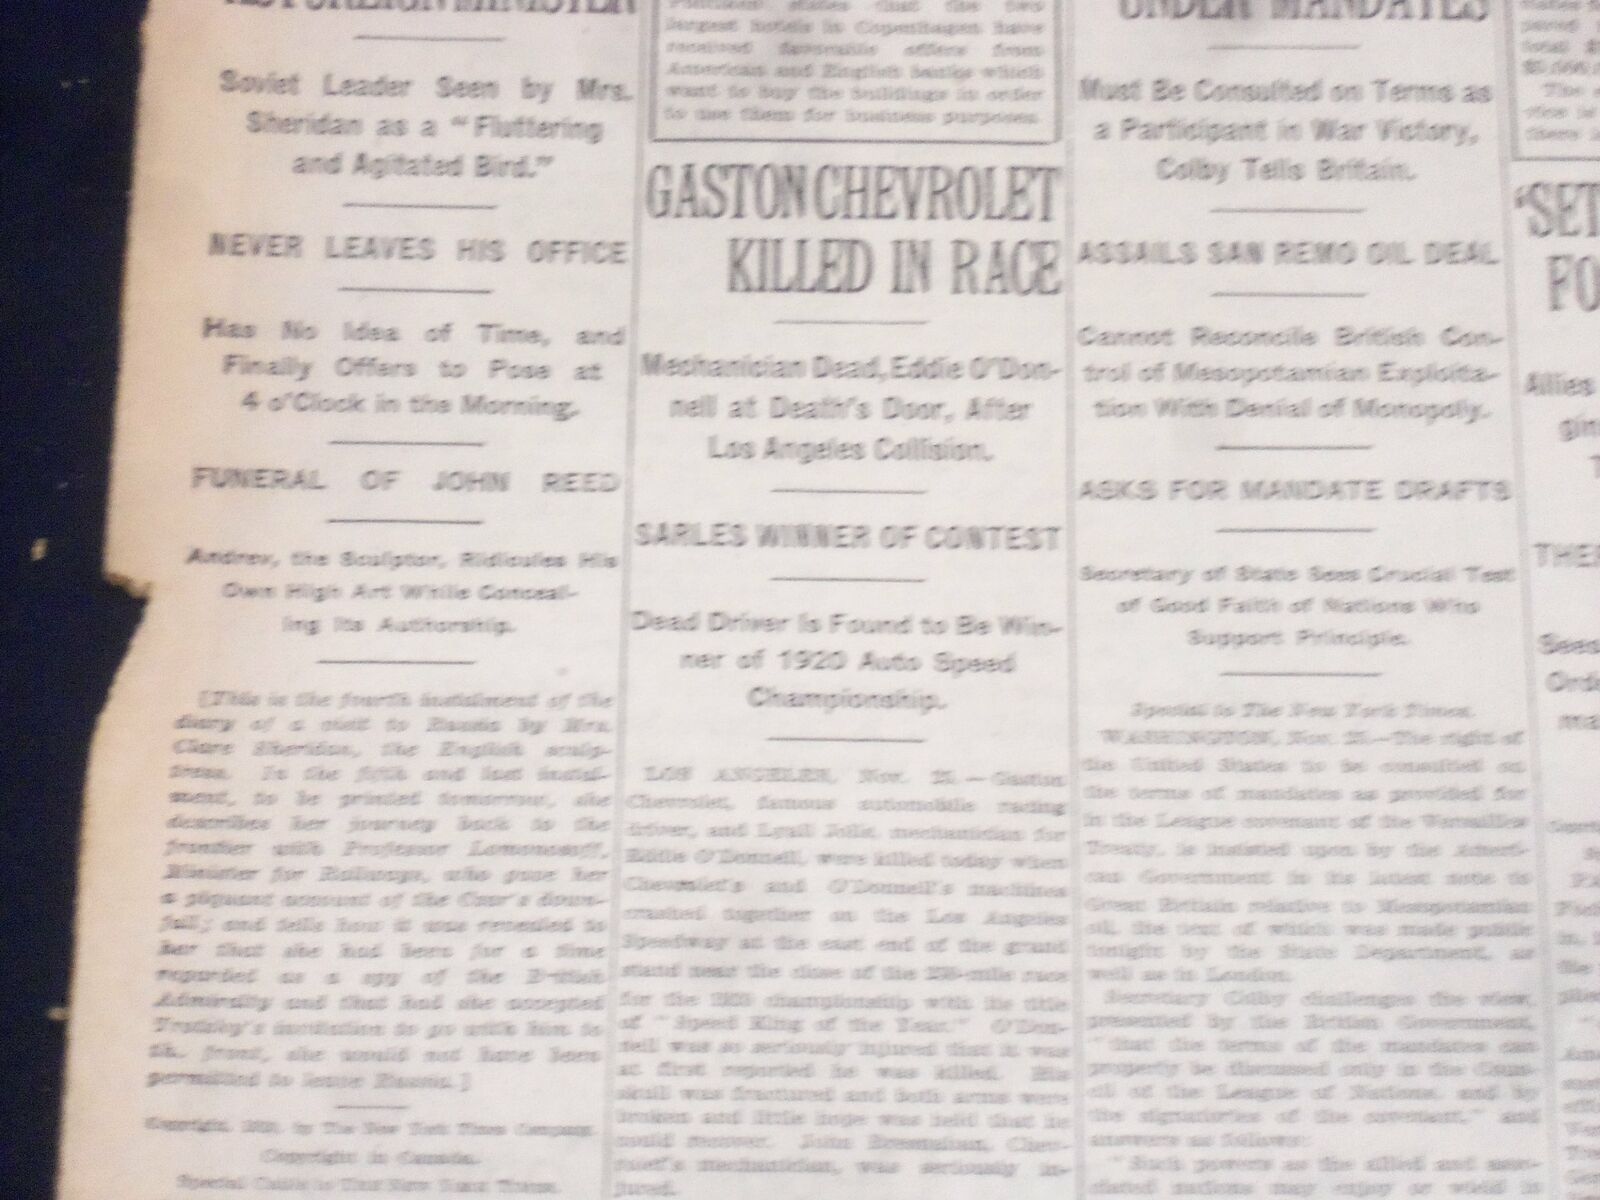 1920 NOVEMBER 26 NEW YORK TIMES - GASTON CHEVROLET KILLED IN RACE - NT 8460